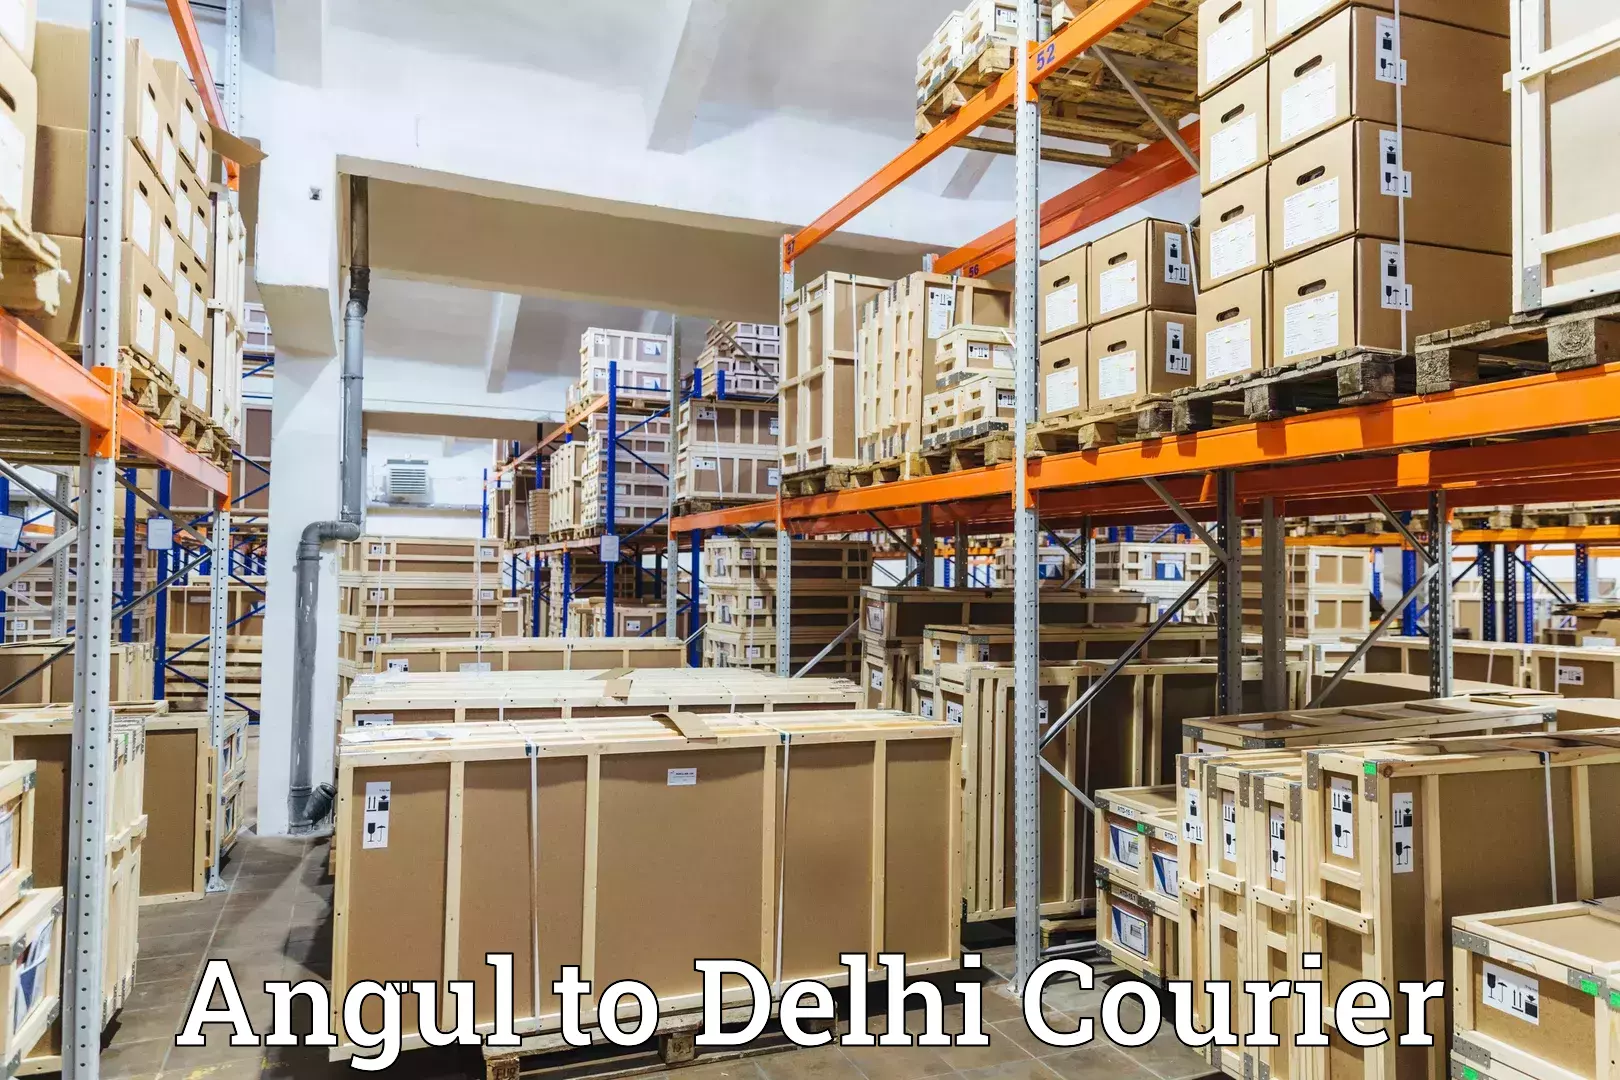 On-demand delivery in Angul to Jamia Millia Islamia New Delhi